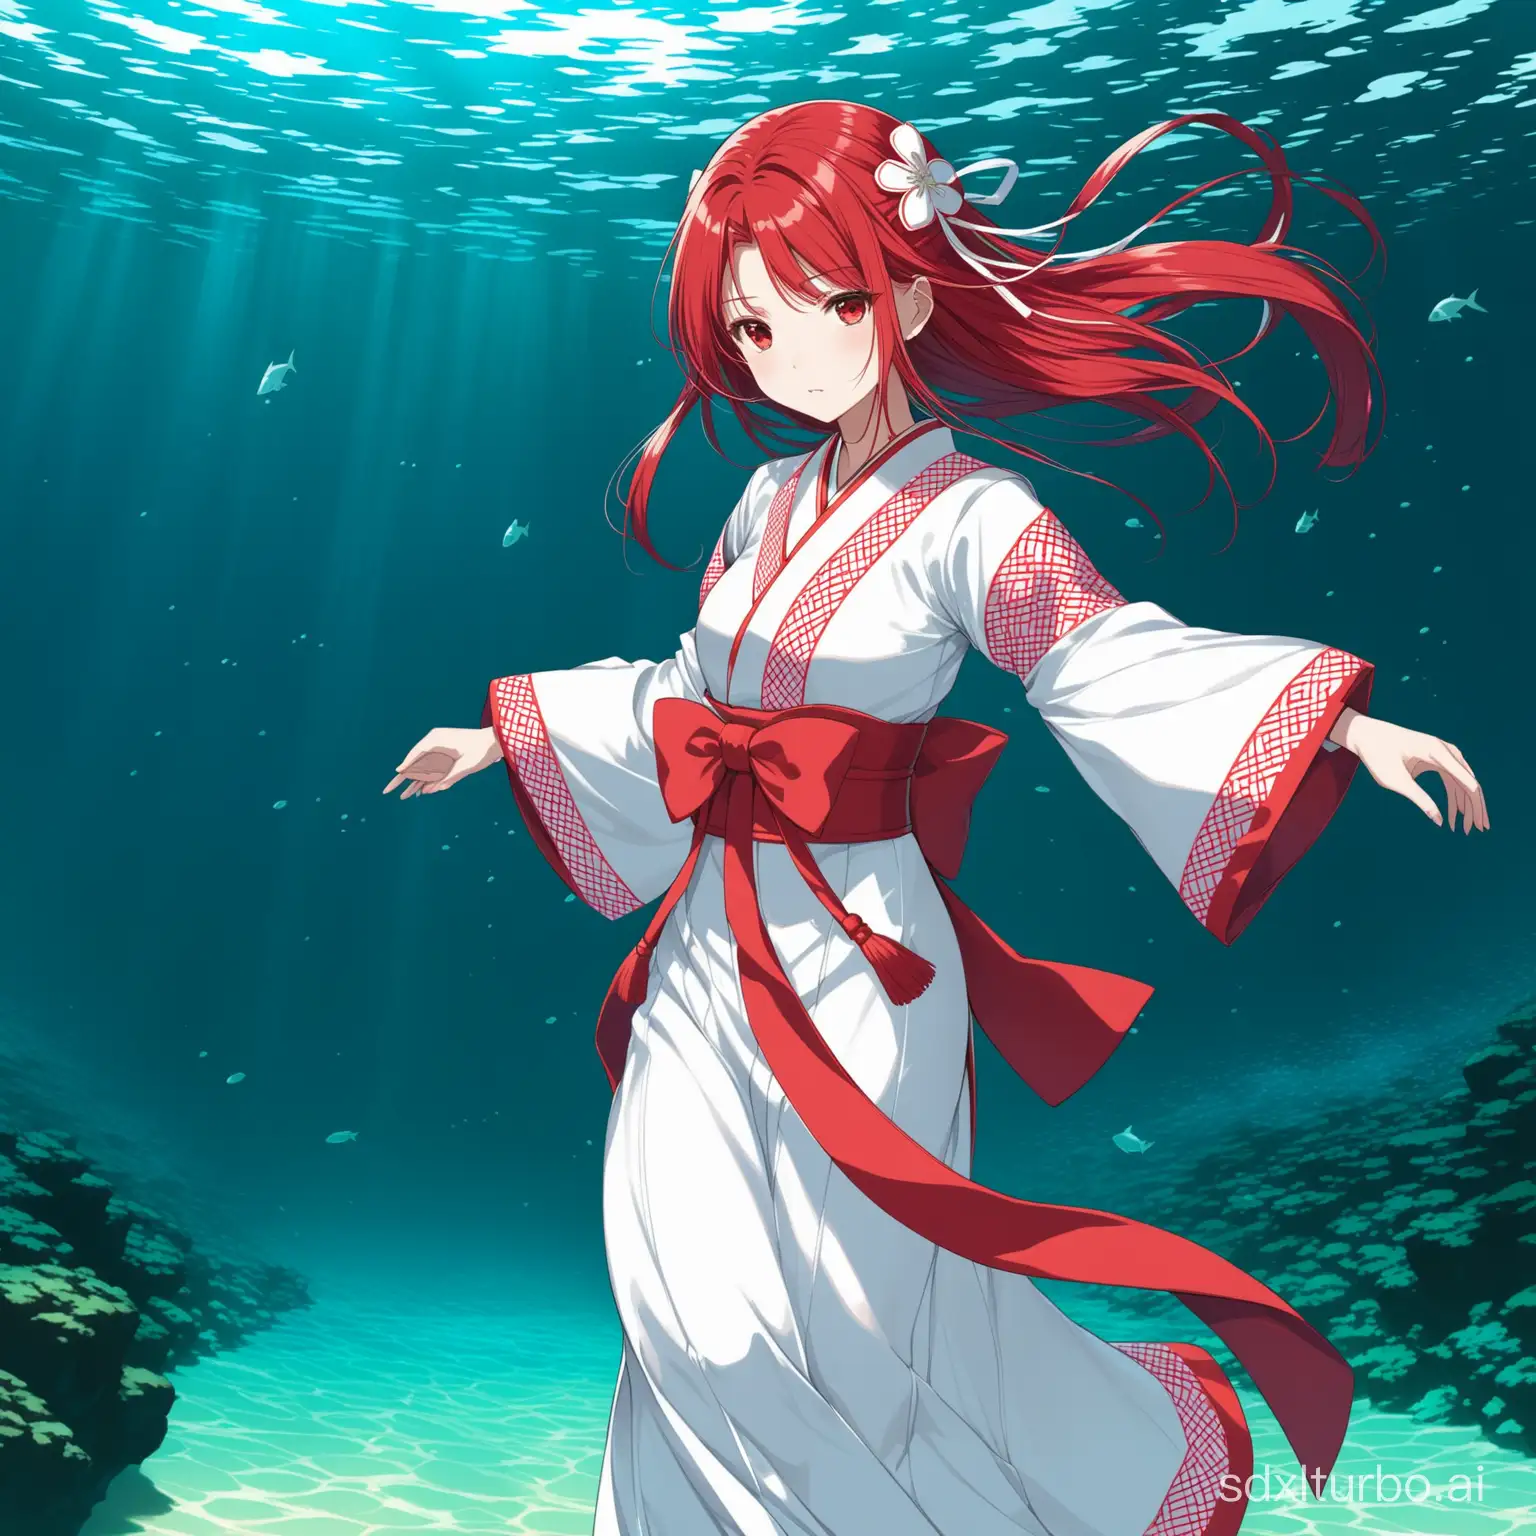 Underwater-Stroll-of-Uesugi-Erii-RedHaired-Shrine-Maiden